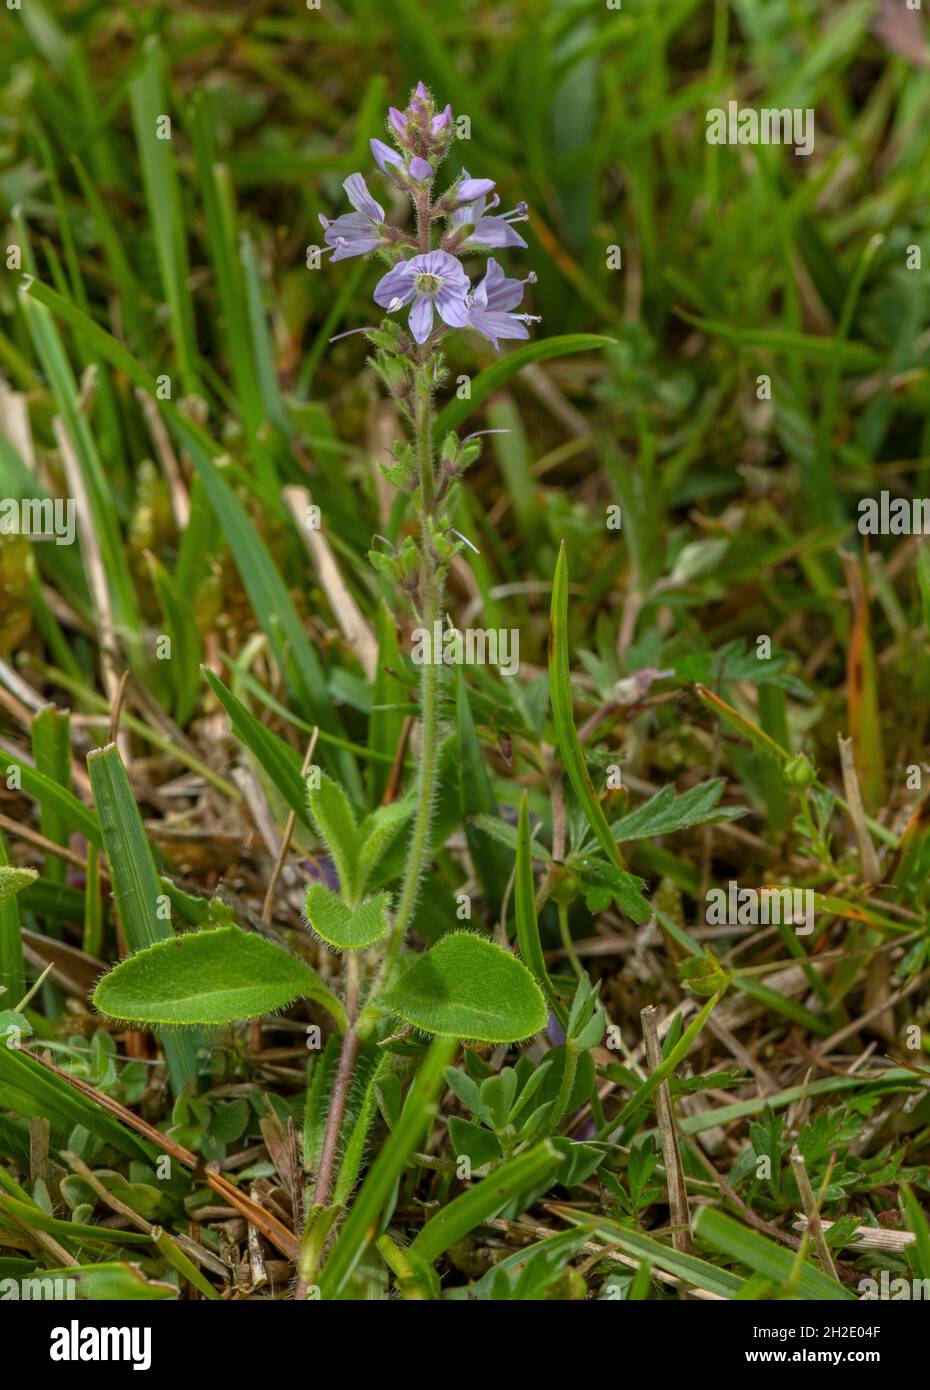 Heath speedwell, Veronica officinalis, in flower in heathy grassland, Dorset. Stock Photo